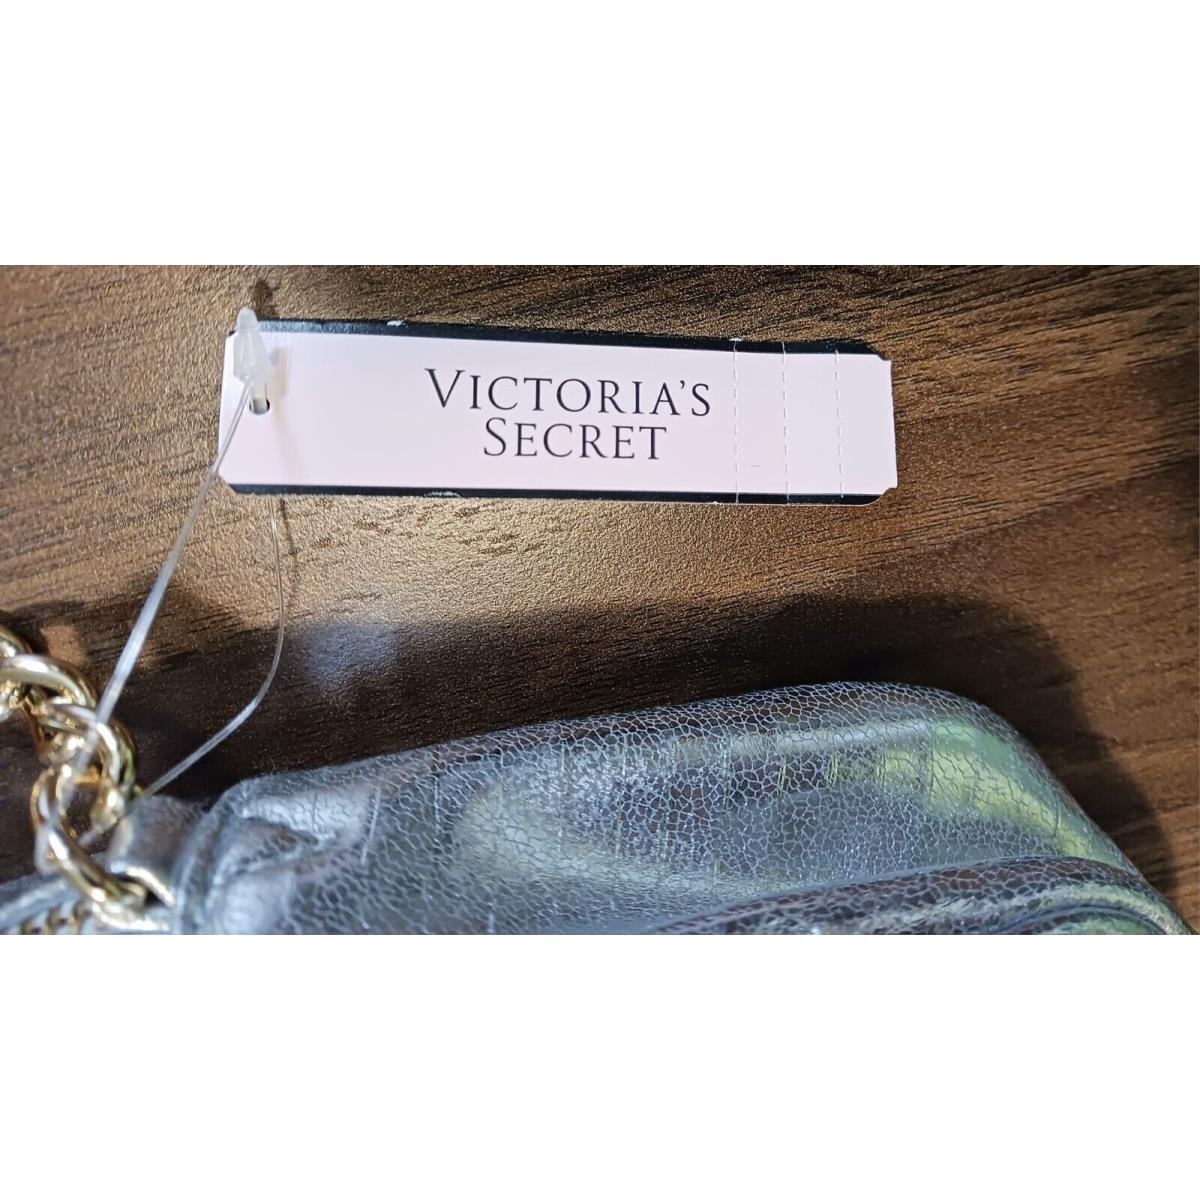 Victoria's Secret  bag  Victoria Secret One - Gold Handle/Strap, Gold Lining, Gold Hardware 0